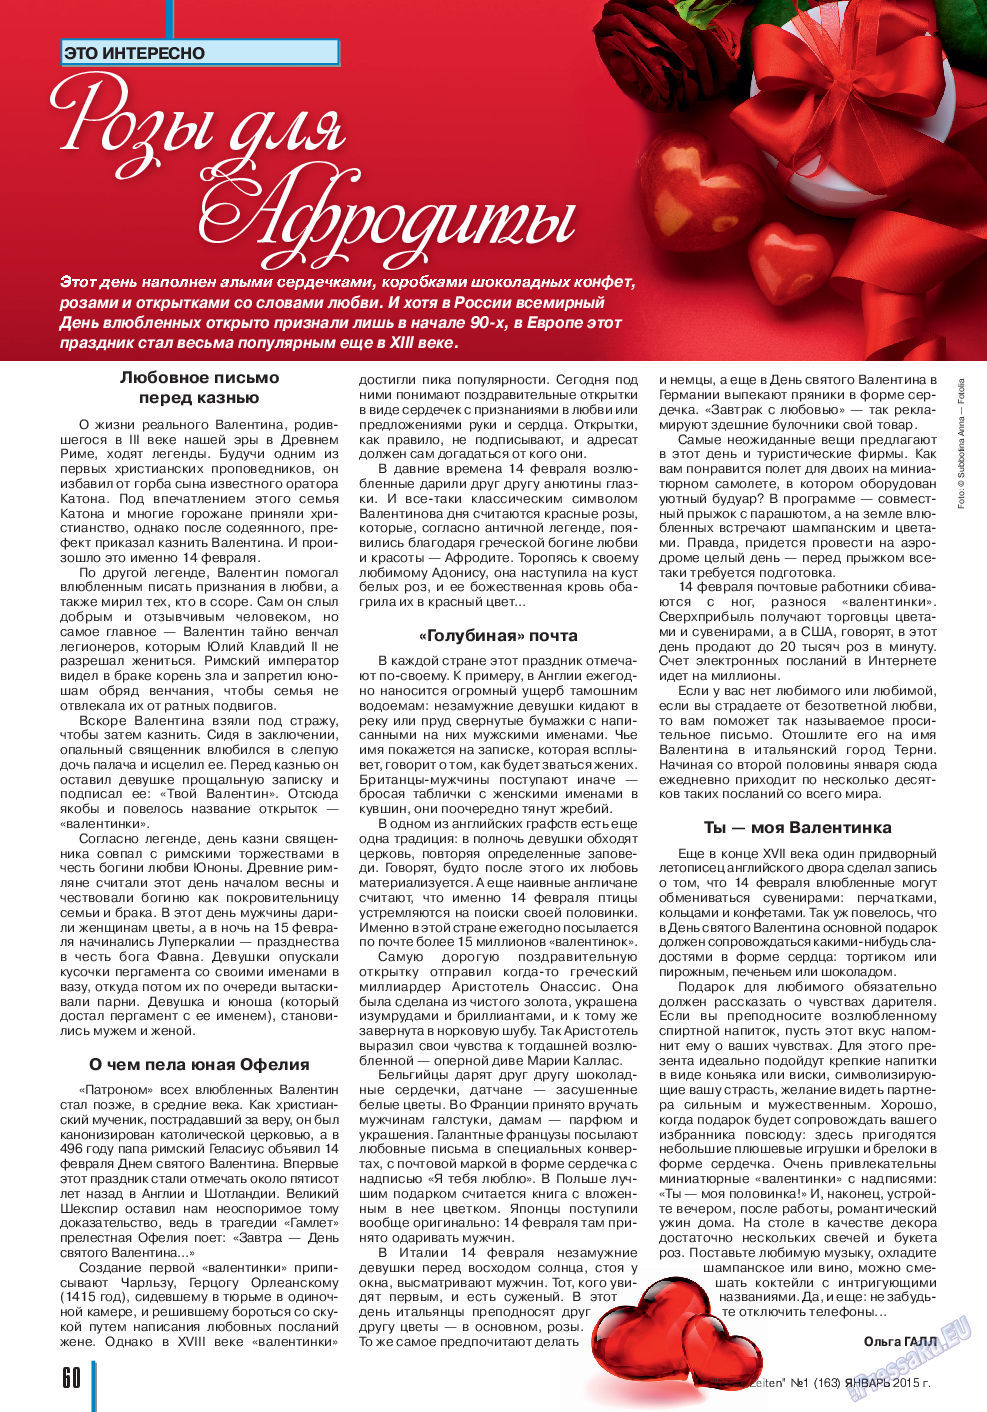 Neue Zeiten, журнал. 2015 №1 стр.60